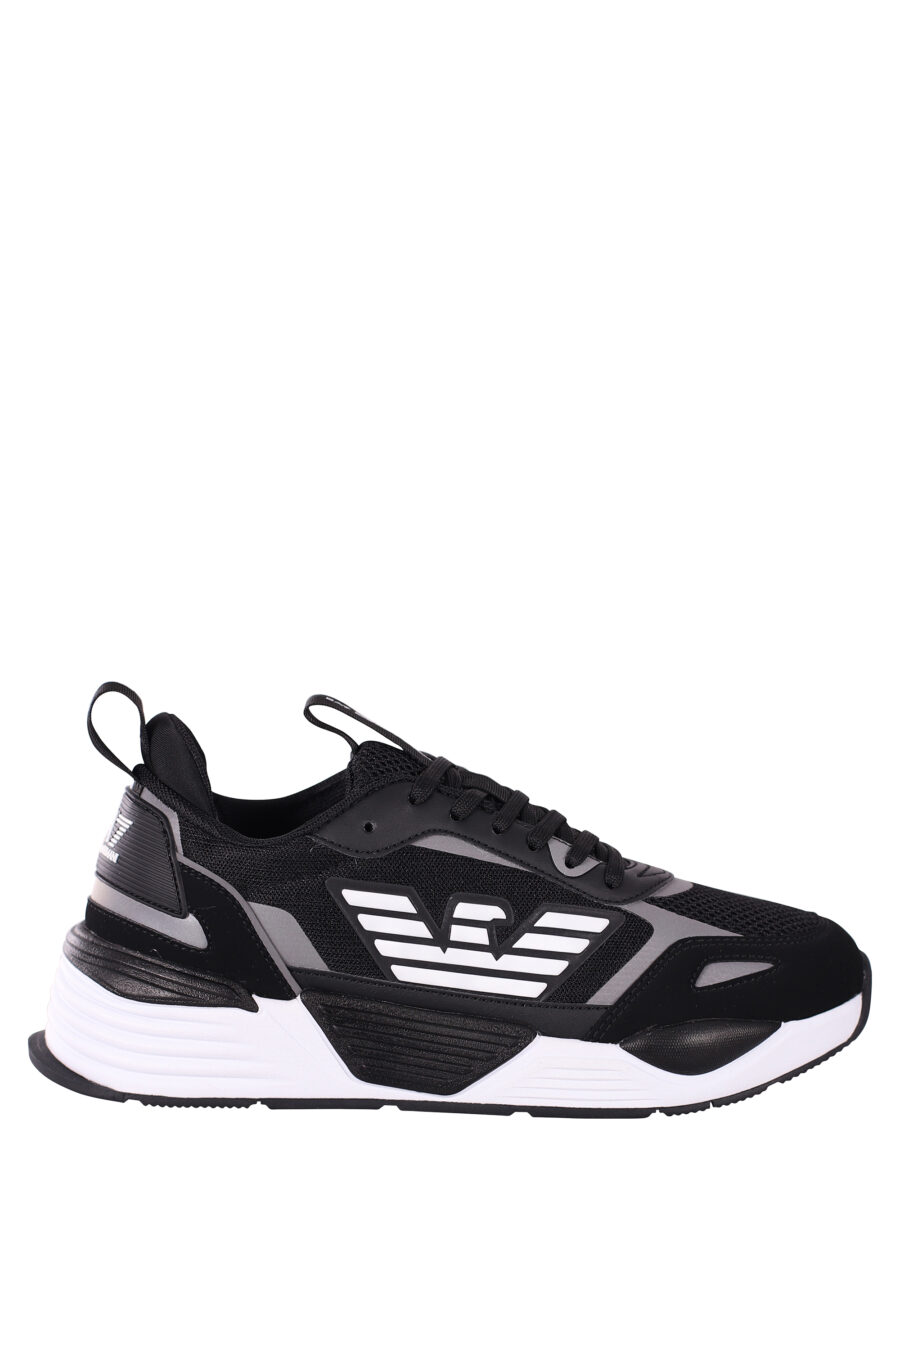 Zapatillas negras y plateado "ace runner" con logo de aguila - IMG 5798